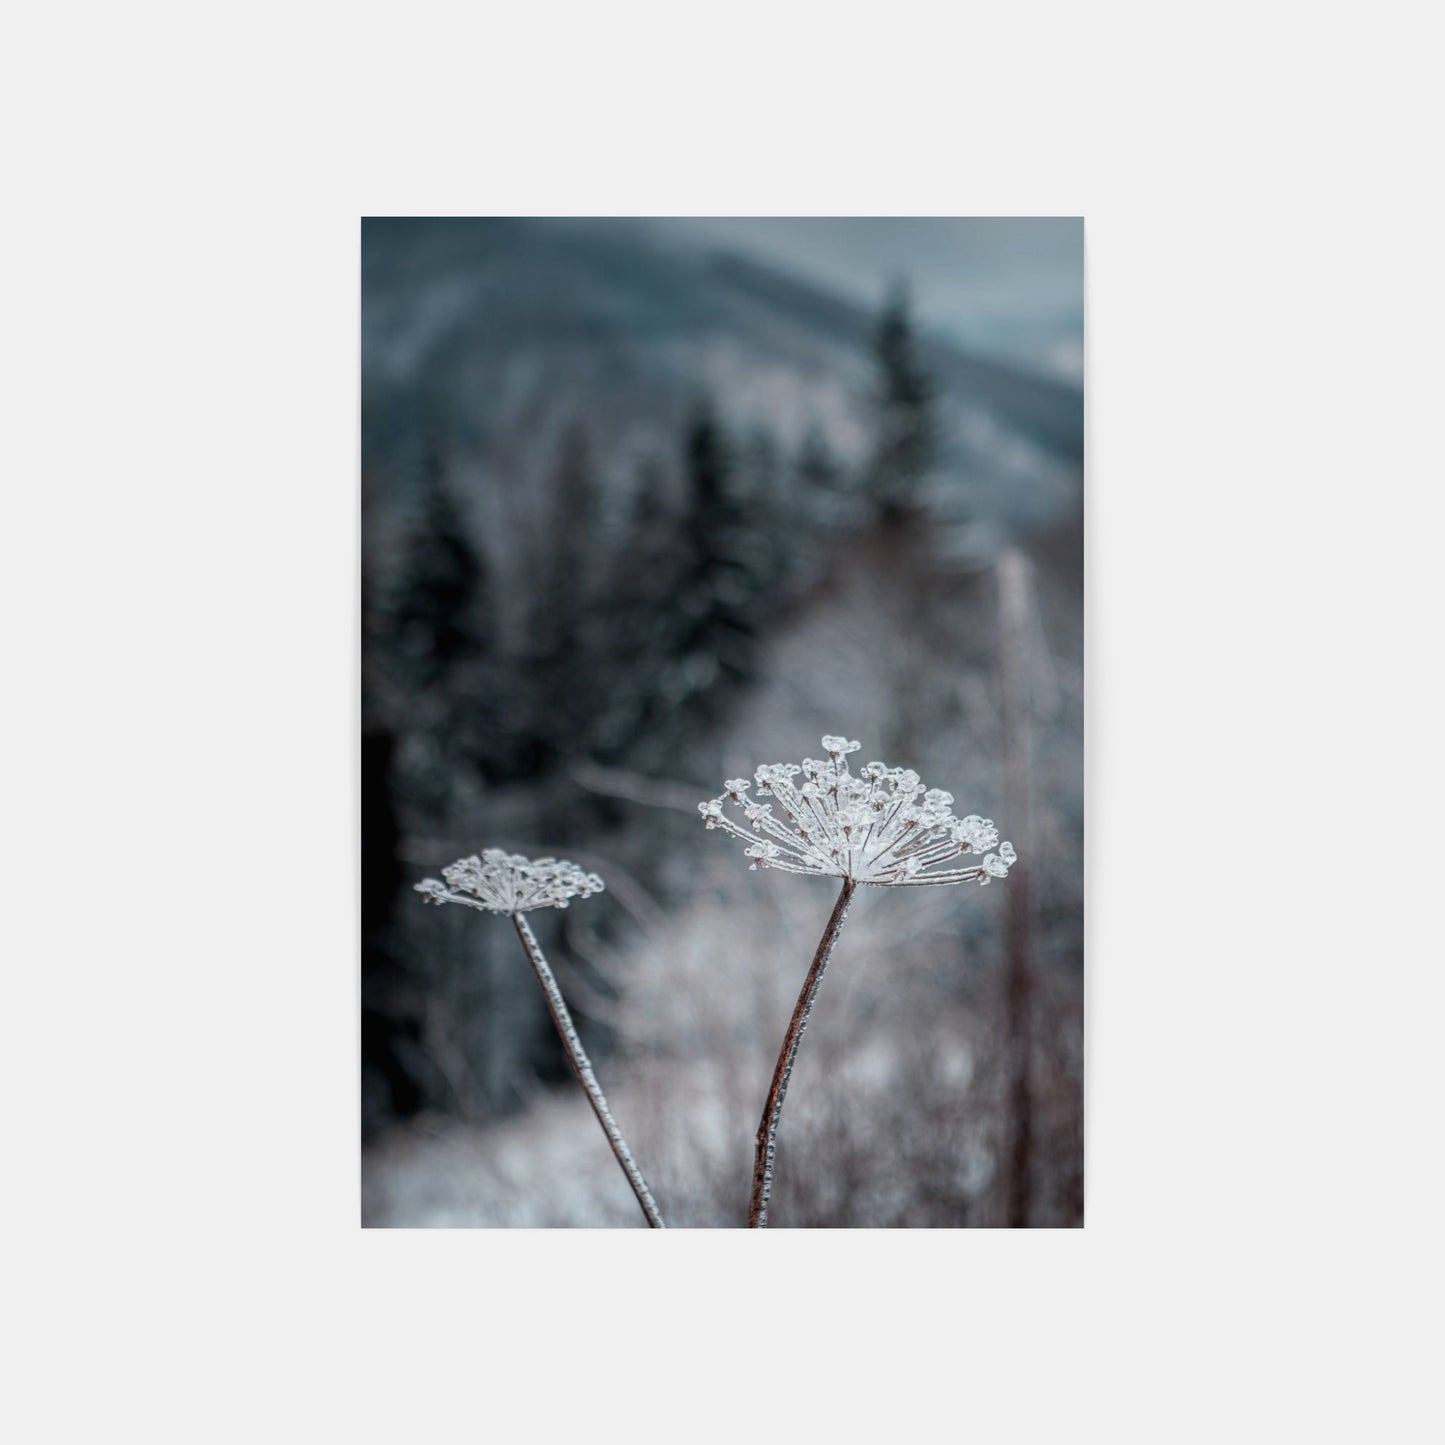 Frozen Flower – Lysa Hora, Czech Republic, 2020